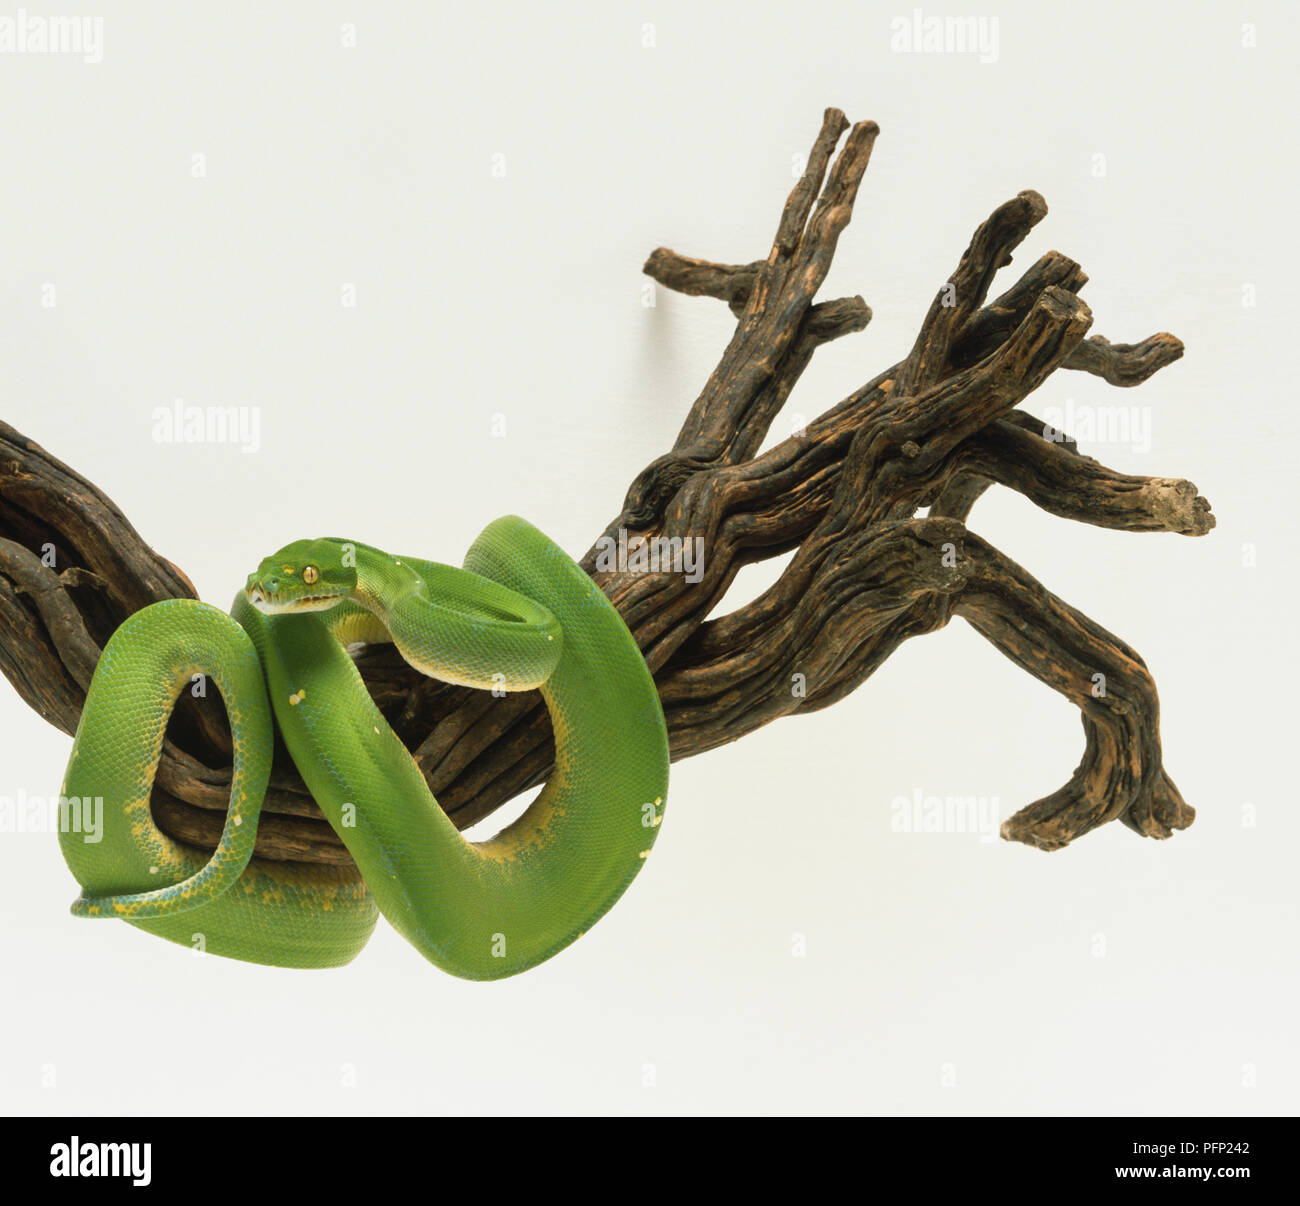 Arbre vert partiellement Python enroulé autour d'une grosse branche. Le serpent est vert clair avec une ligne brisée de marques blanches le long de la ligne médiane du dos. Les bosses sont visibles sur la tête et le serpent a les yeux verts. Banque D'Images